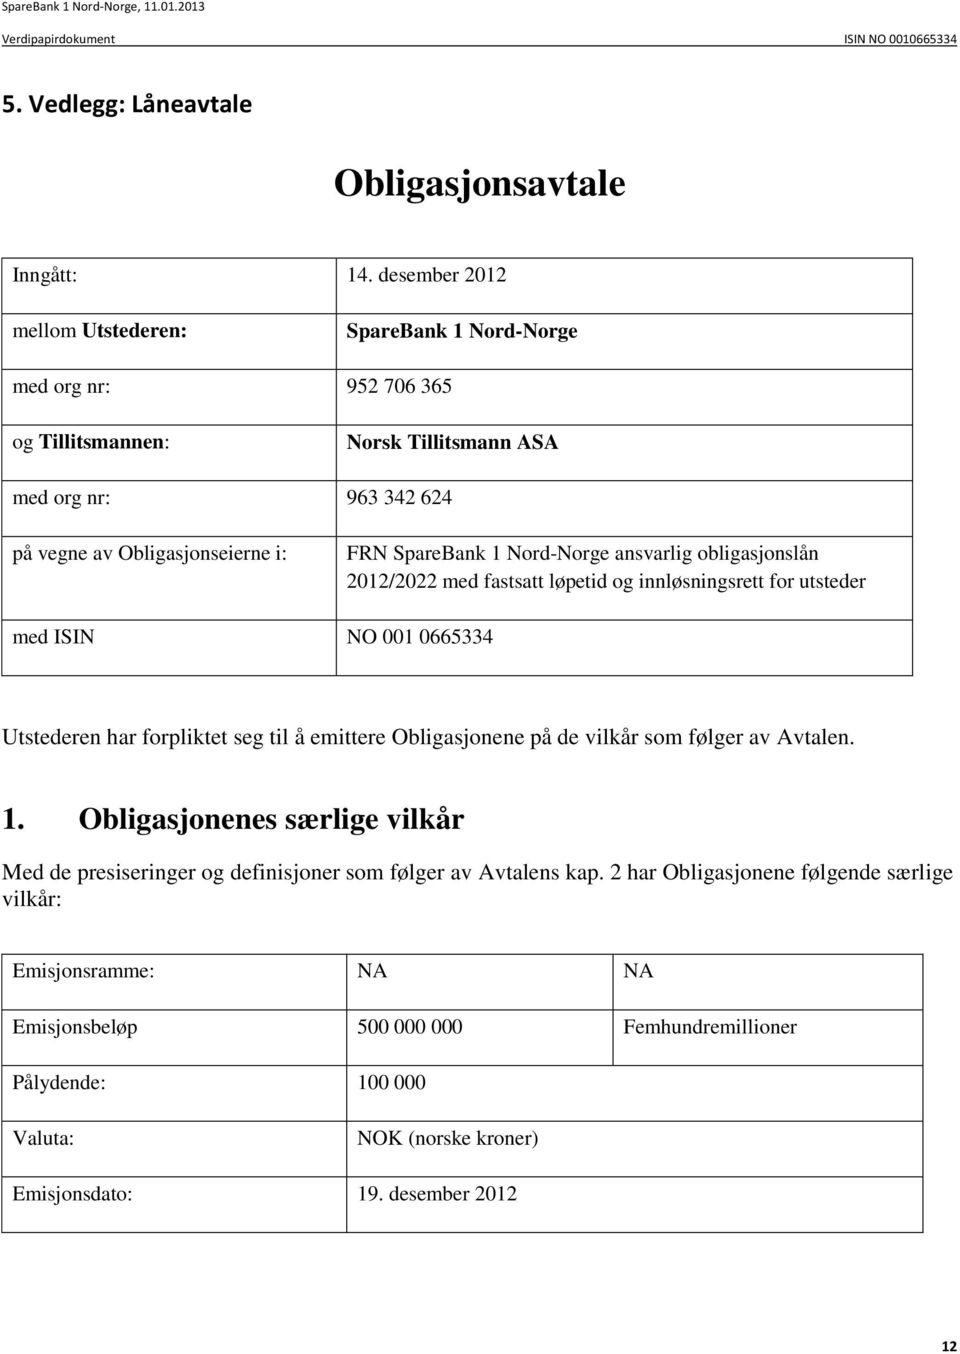 SpareBank 1 Nord-Norge ansvarlig obligasjonslån 2012/2022 med fastsatt løpetid og innløsningsrett for utsteder med ISIN NO 001 0665334 Utstederen har forpliktet seg til å emittere